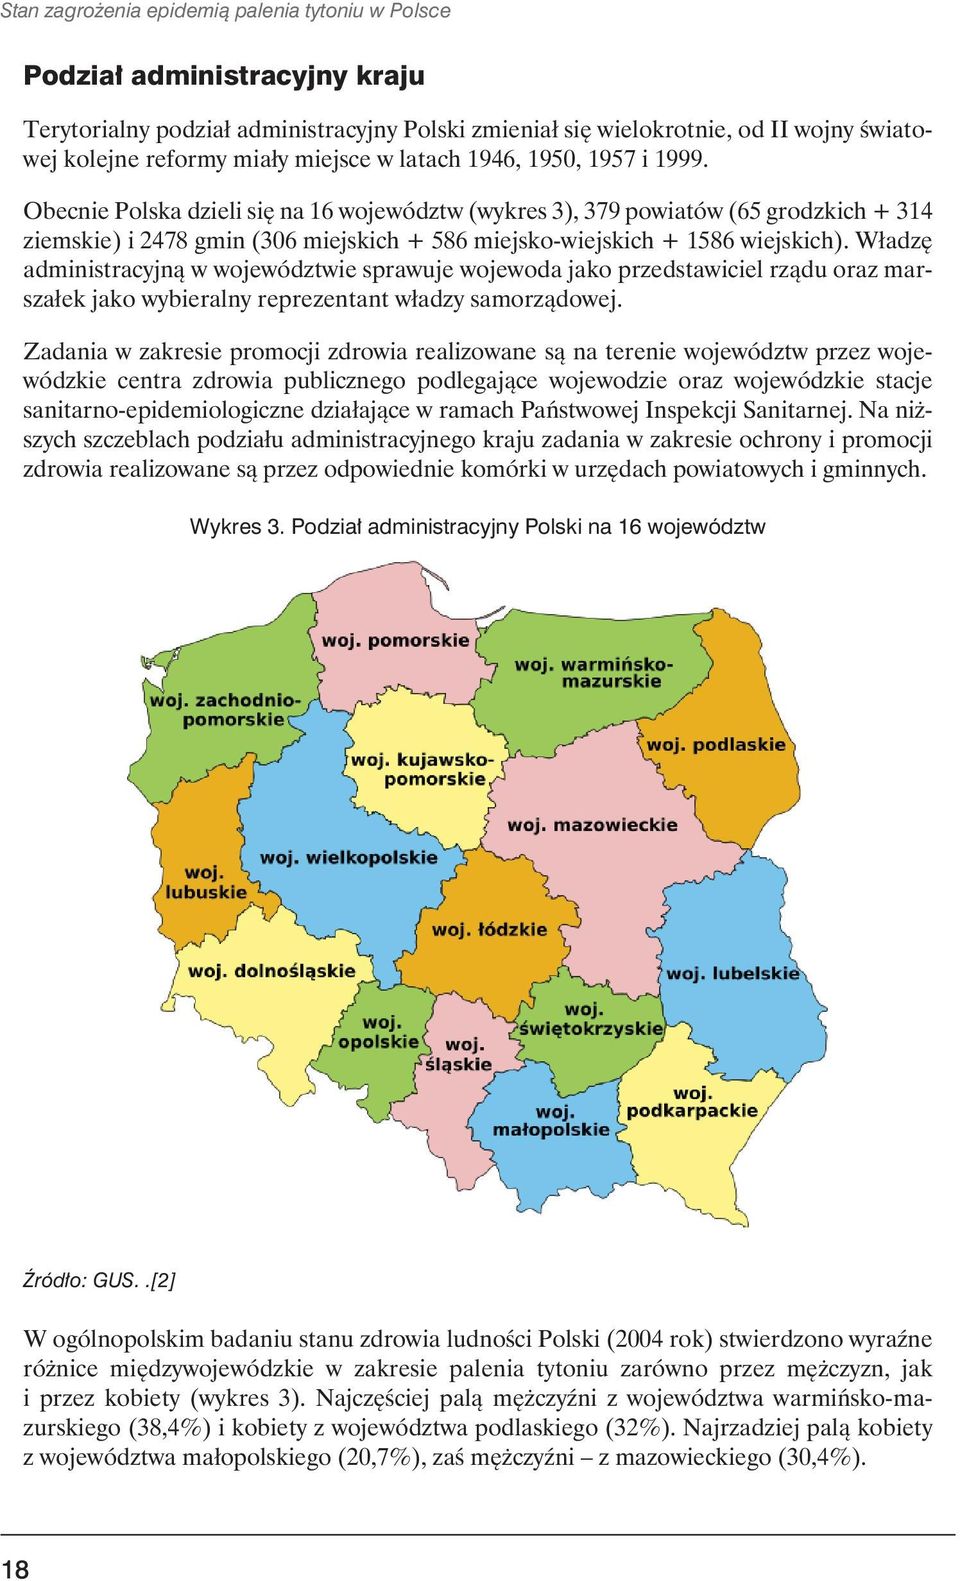 Obecnie Polska dzieli się na 16 województw (wykres 3), 379 powiatów (65 grodzkich + 314 ziemskie) i 2478 gmin (306 miejskich + 586 miejsko-wiejskich + 1586 wiejskich).